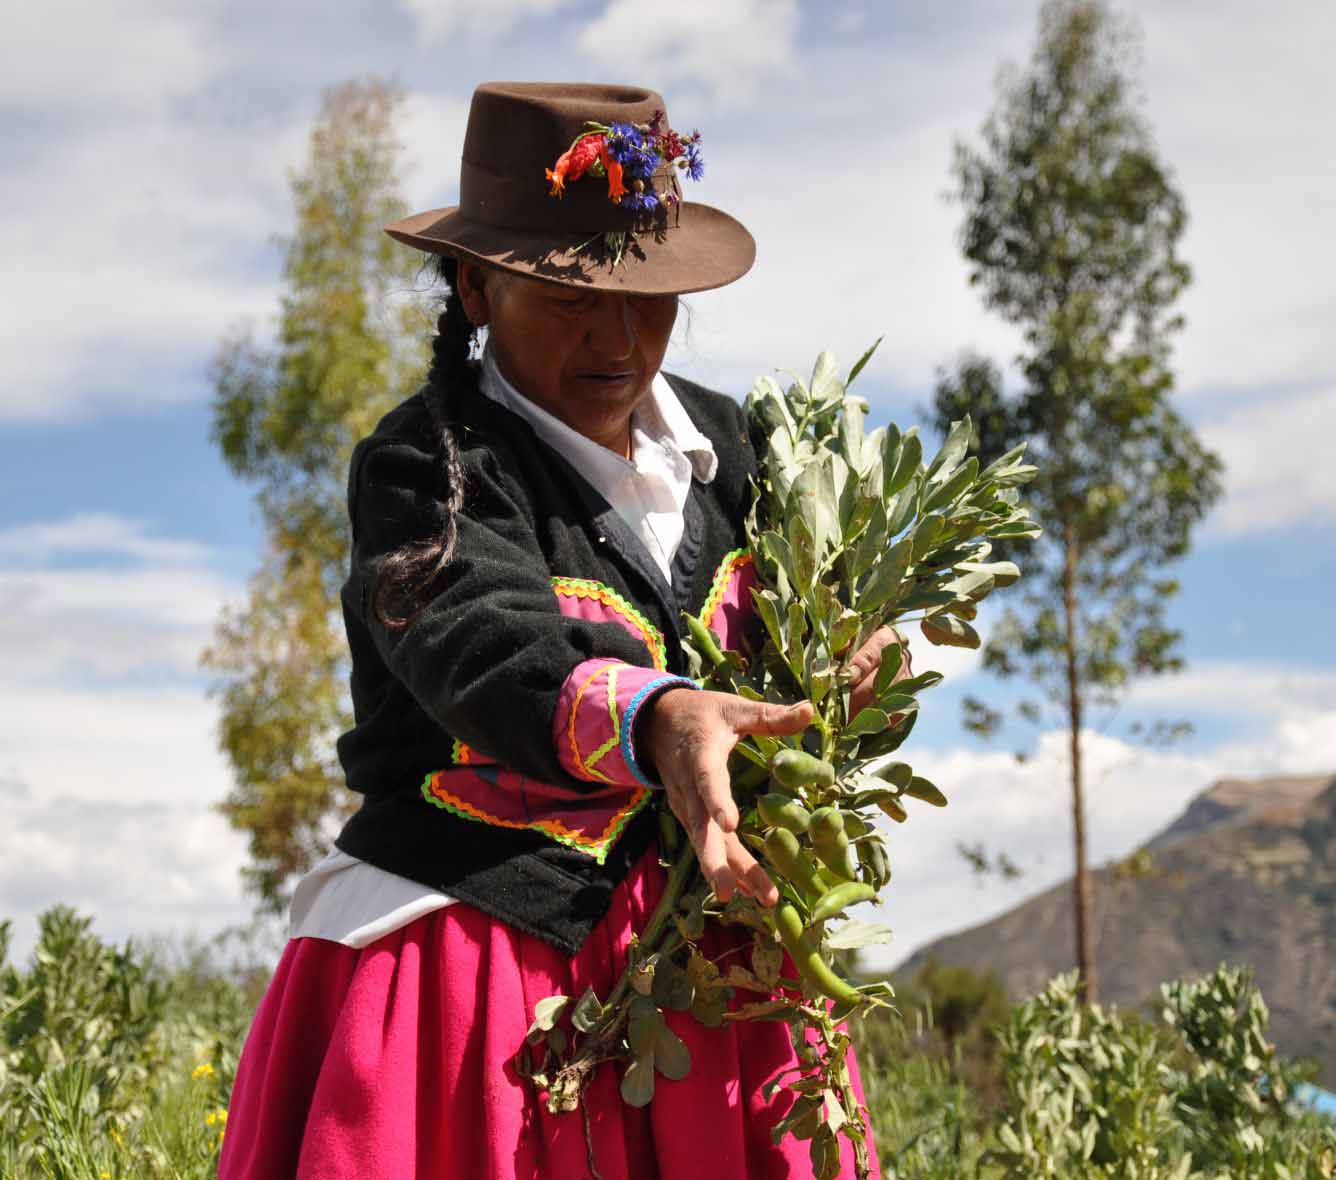 PERU – A rural woman in the field tending her crops